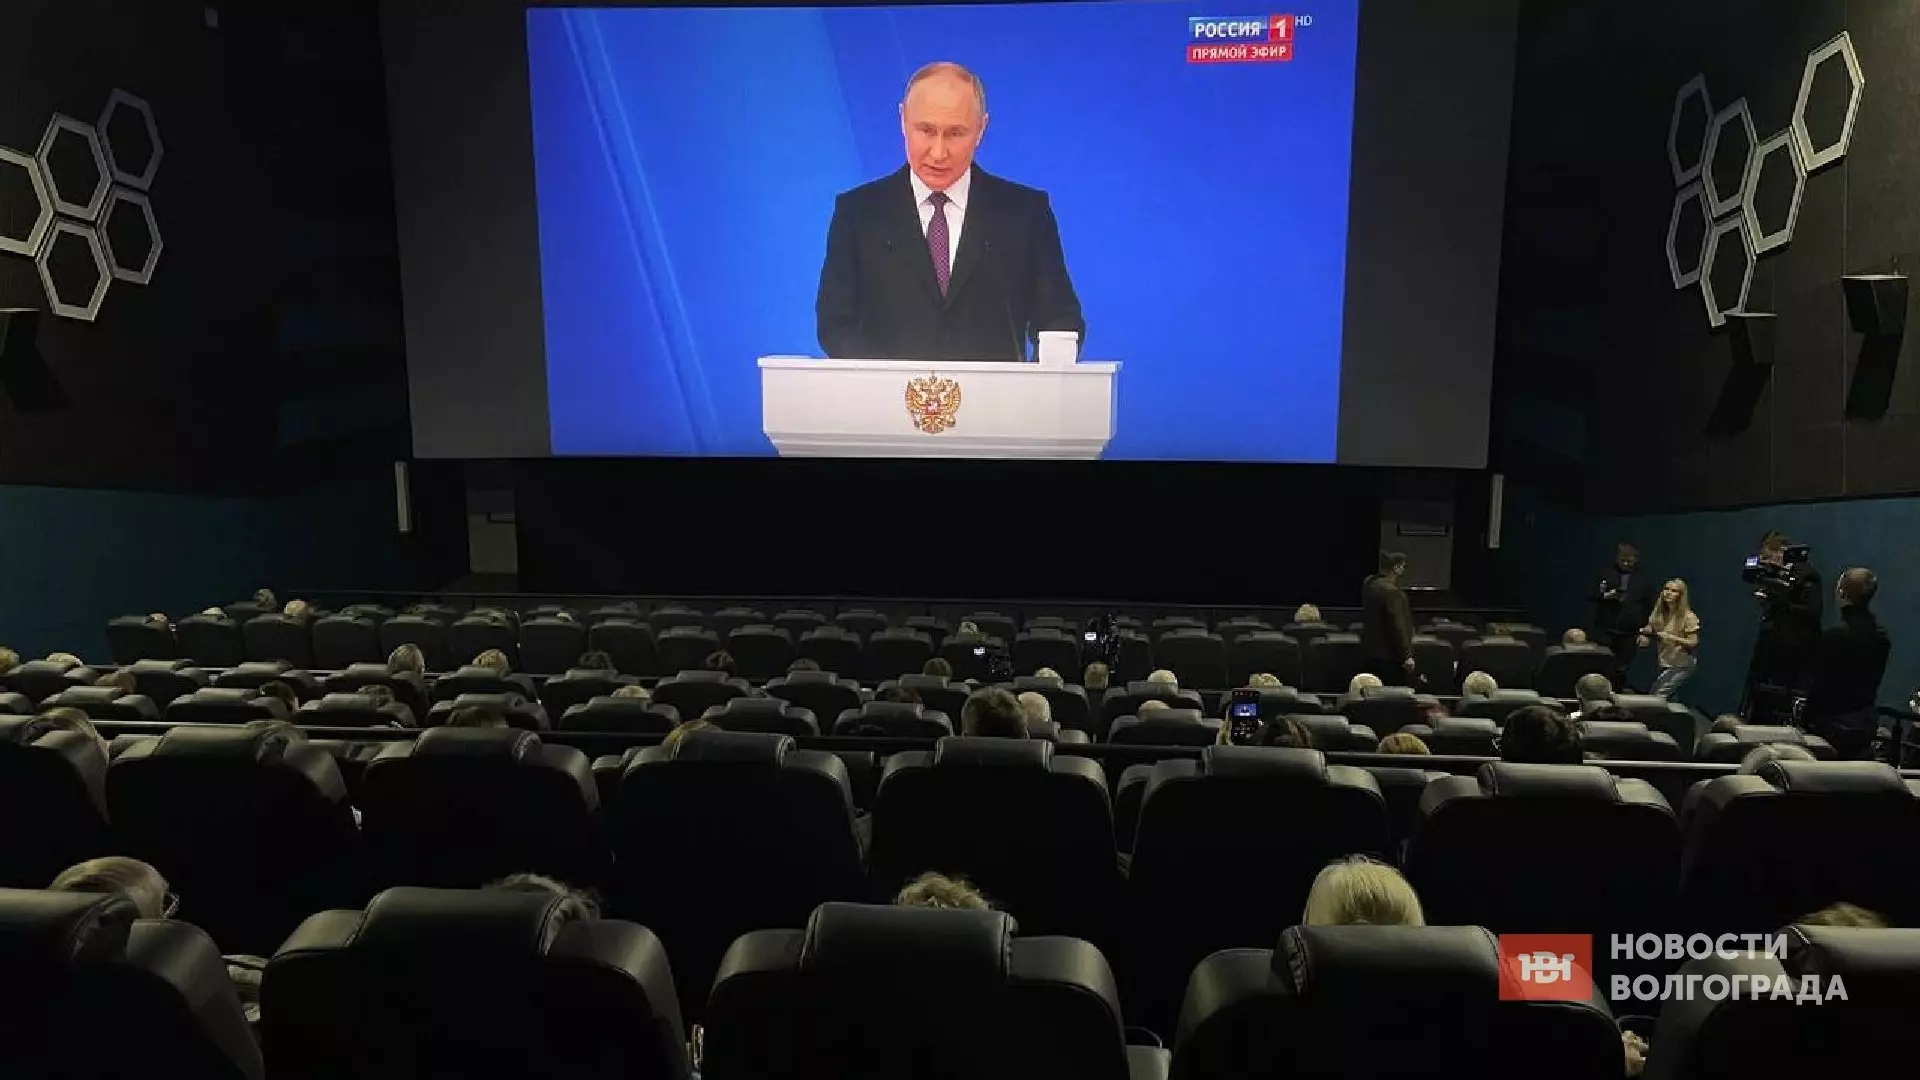 Полный кинозал собрал Владимир Путин в Волгограде